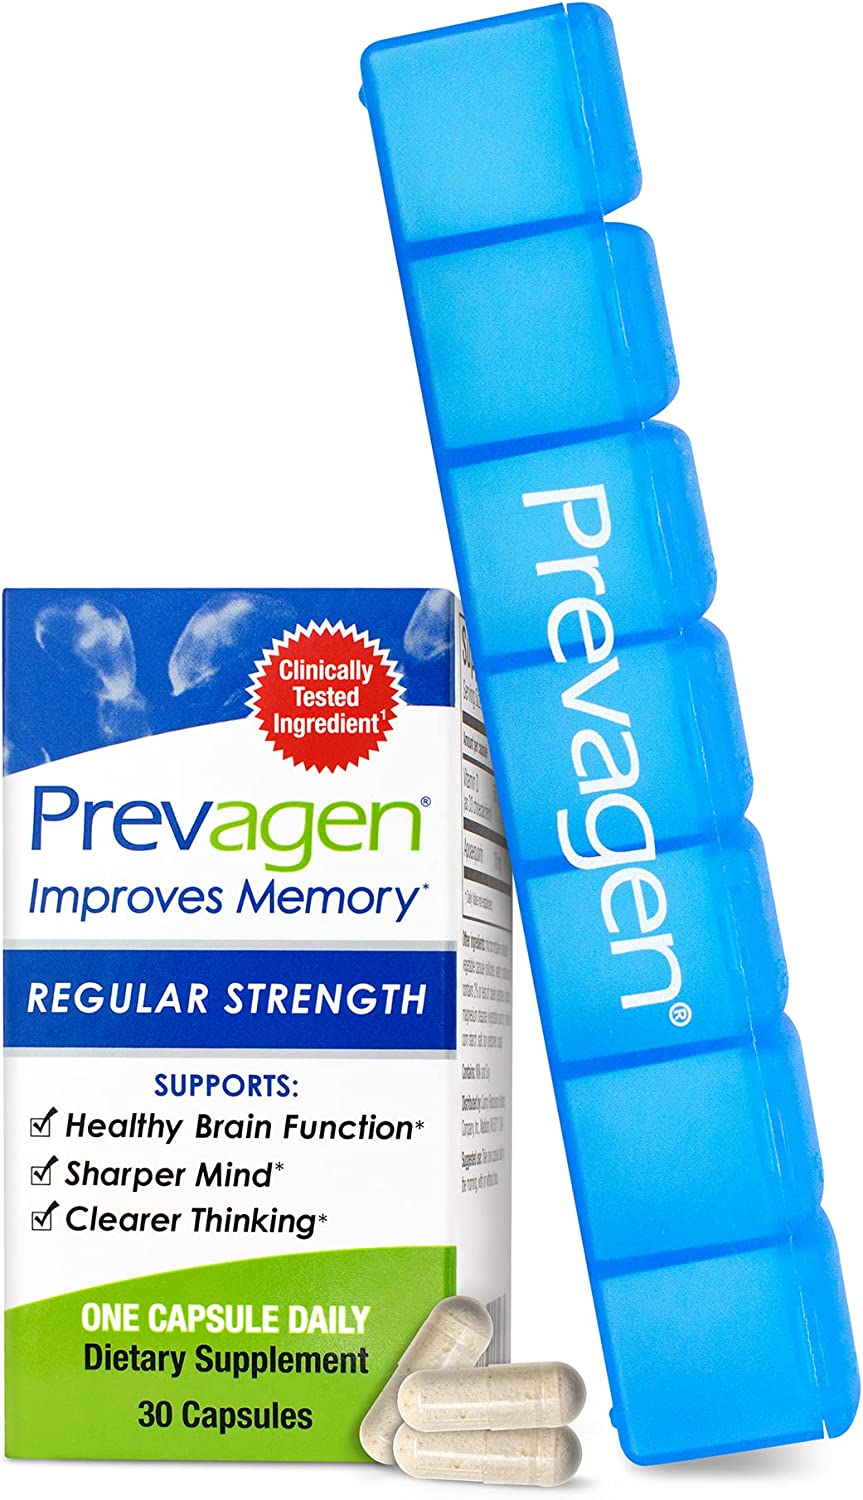 Prevagen Improves Memory - Regular Strength 10mg, 60 Capsules